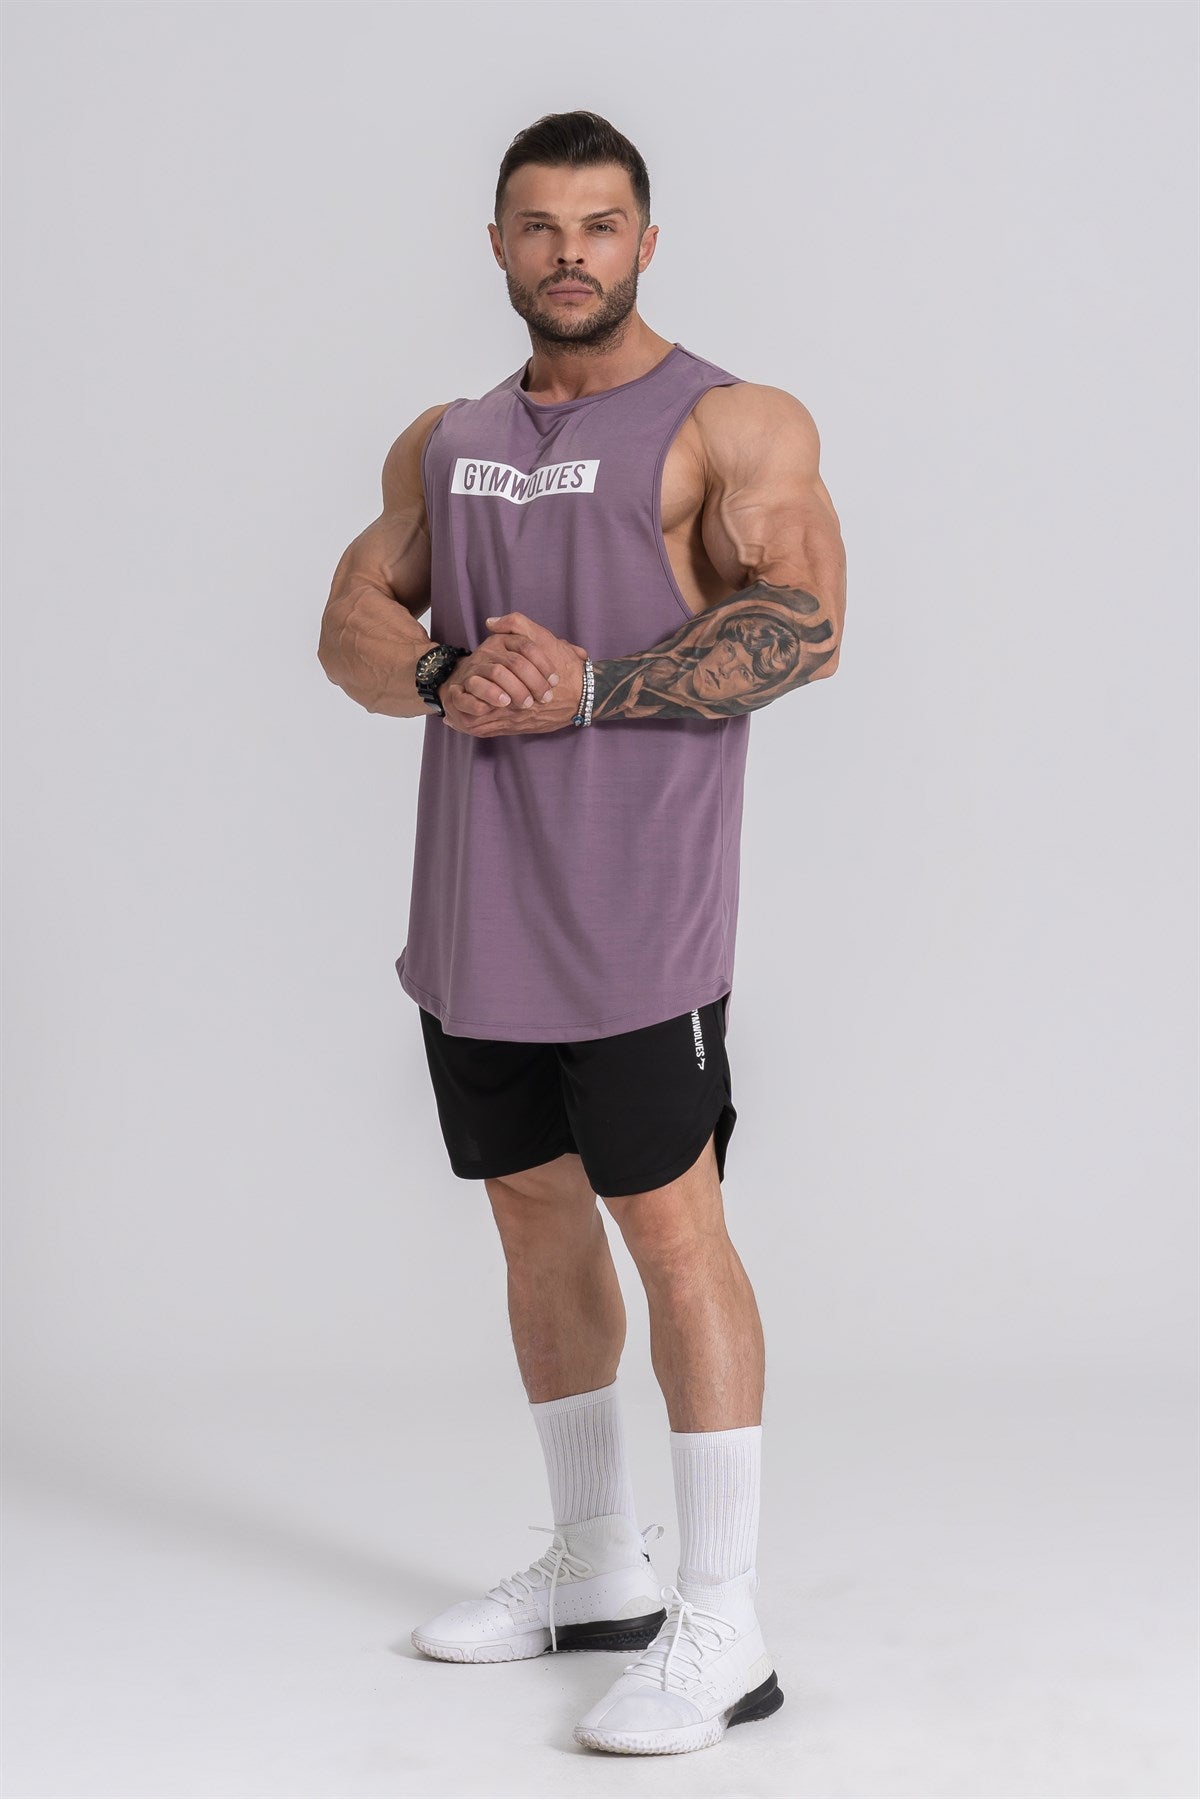 Gymwolves Man Sleeveless T-Shirt | Men Sport T-shirt | Workout Tanktop |